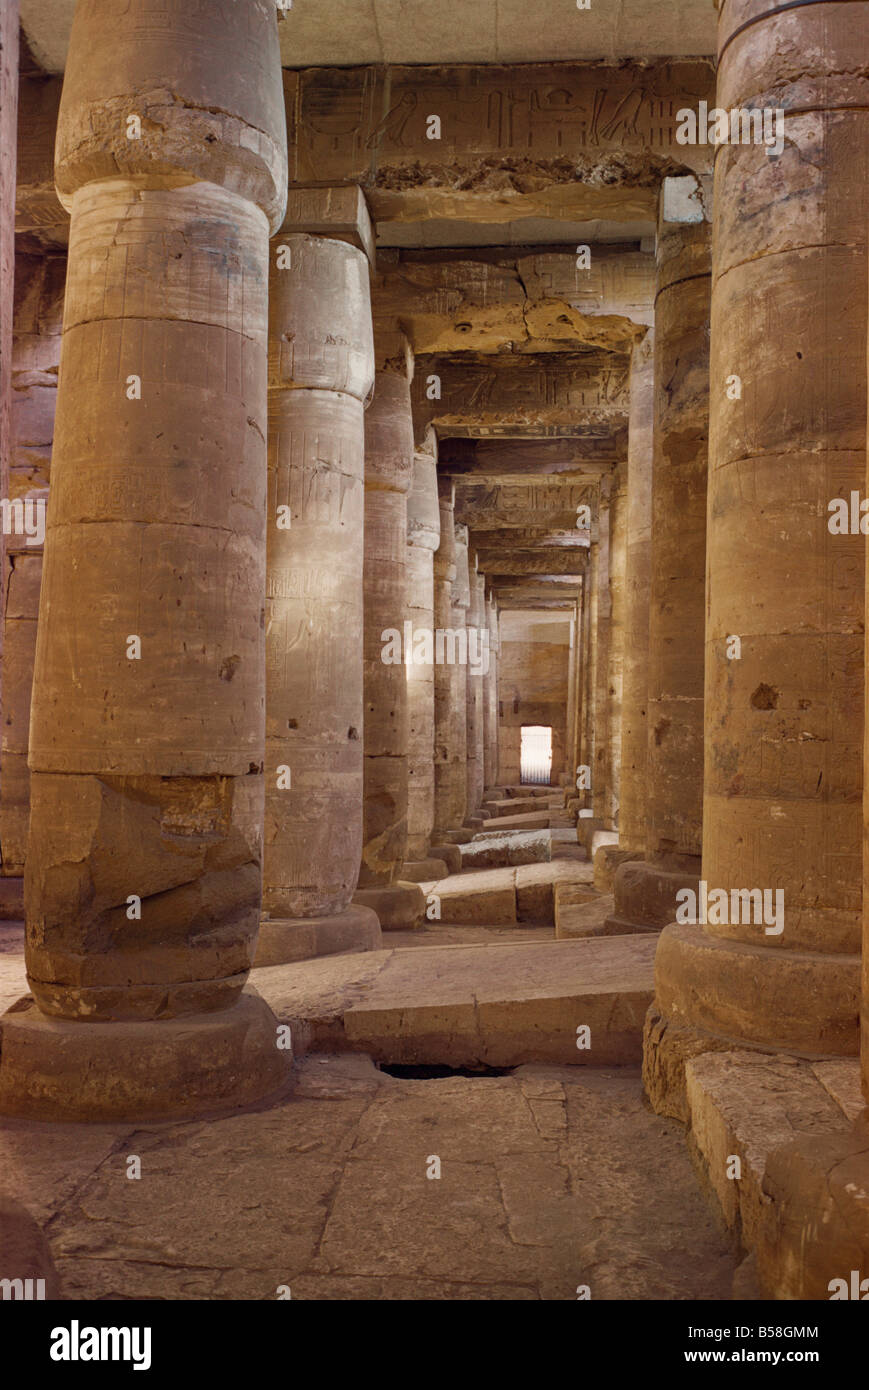 L'intérieur du temple d'Sythos J'xviiième dynastie Abydos Egypte Afrique W Rawlings Banque D'Images